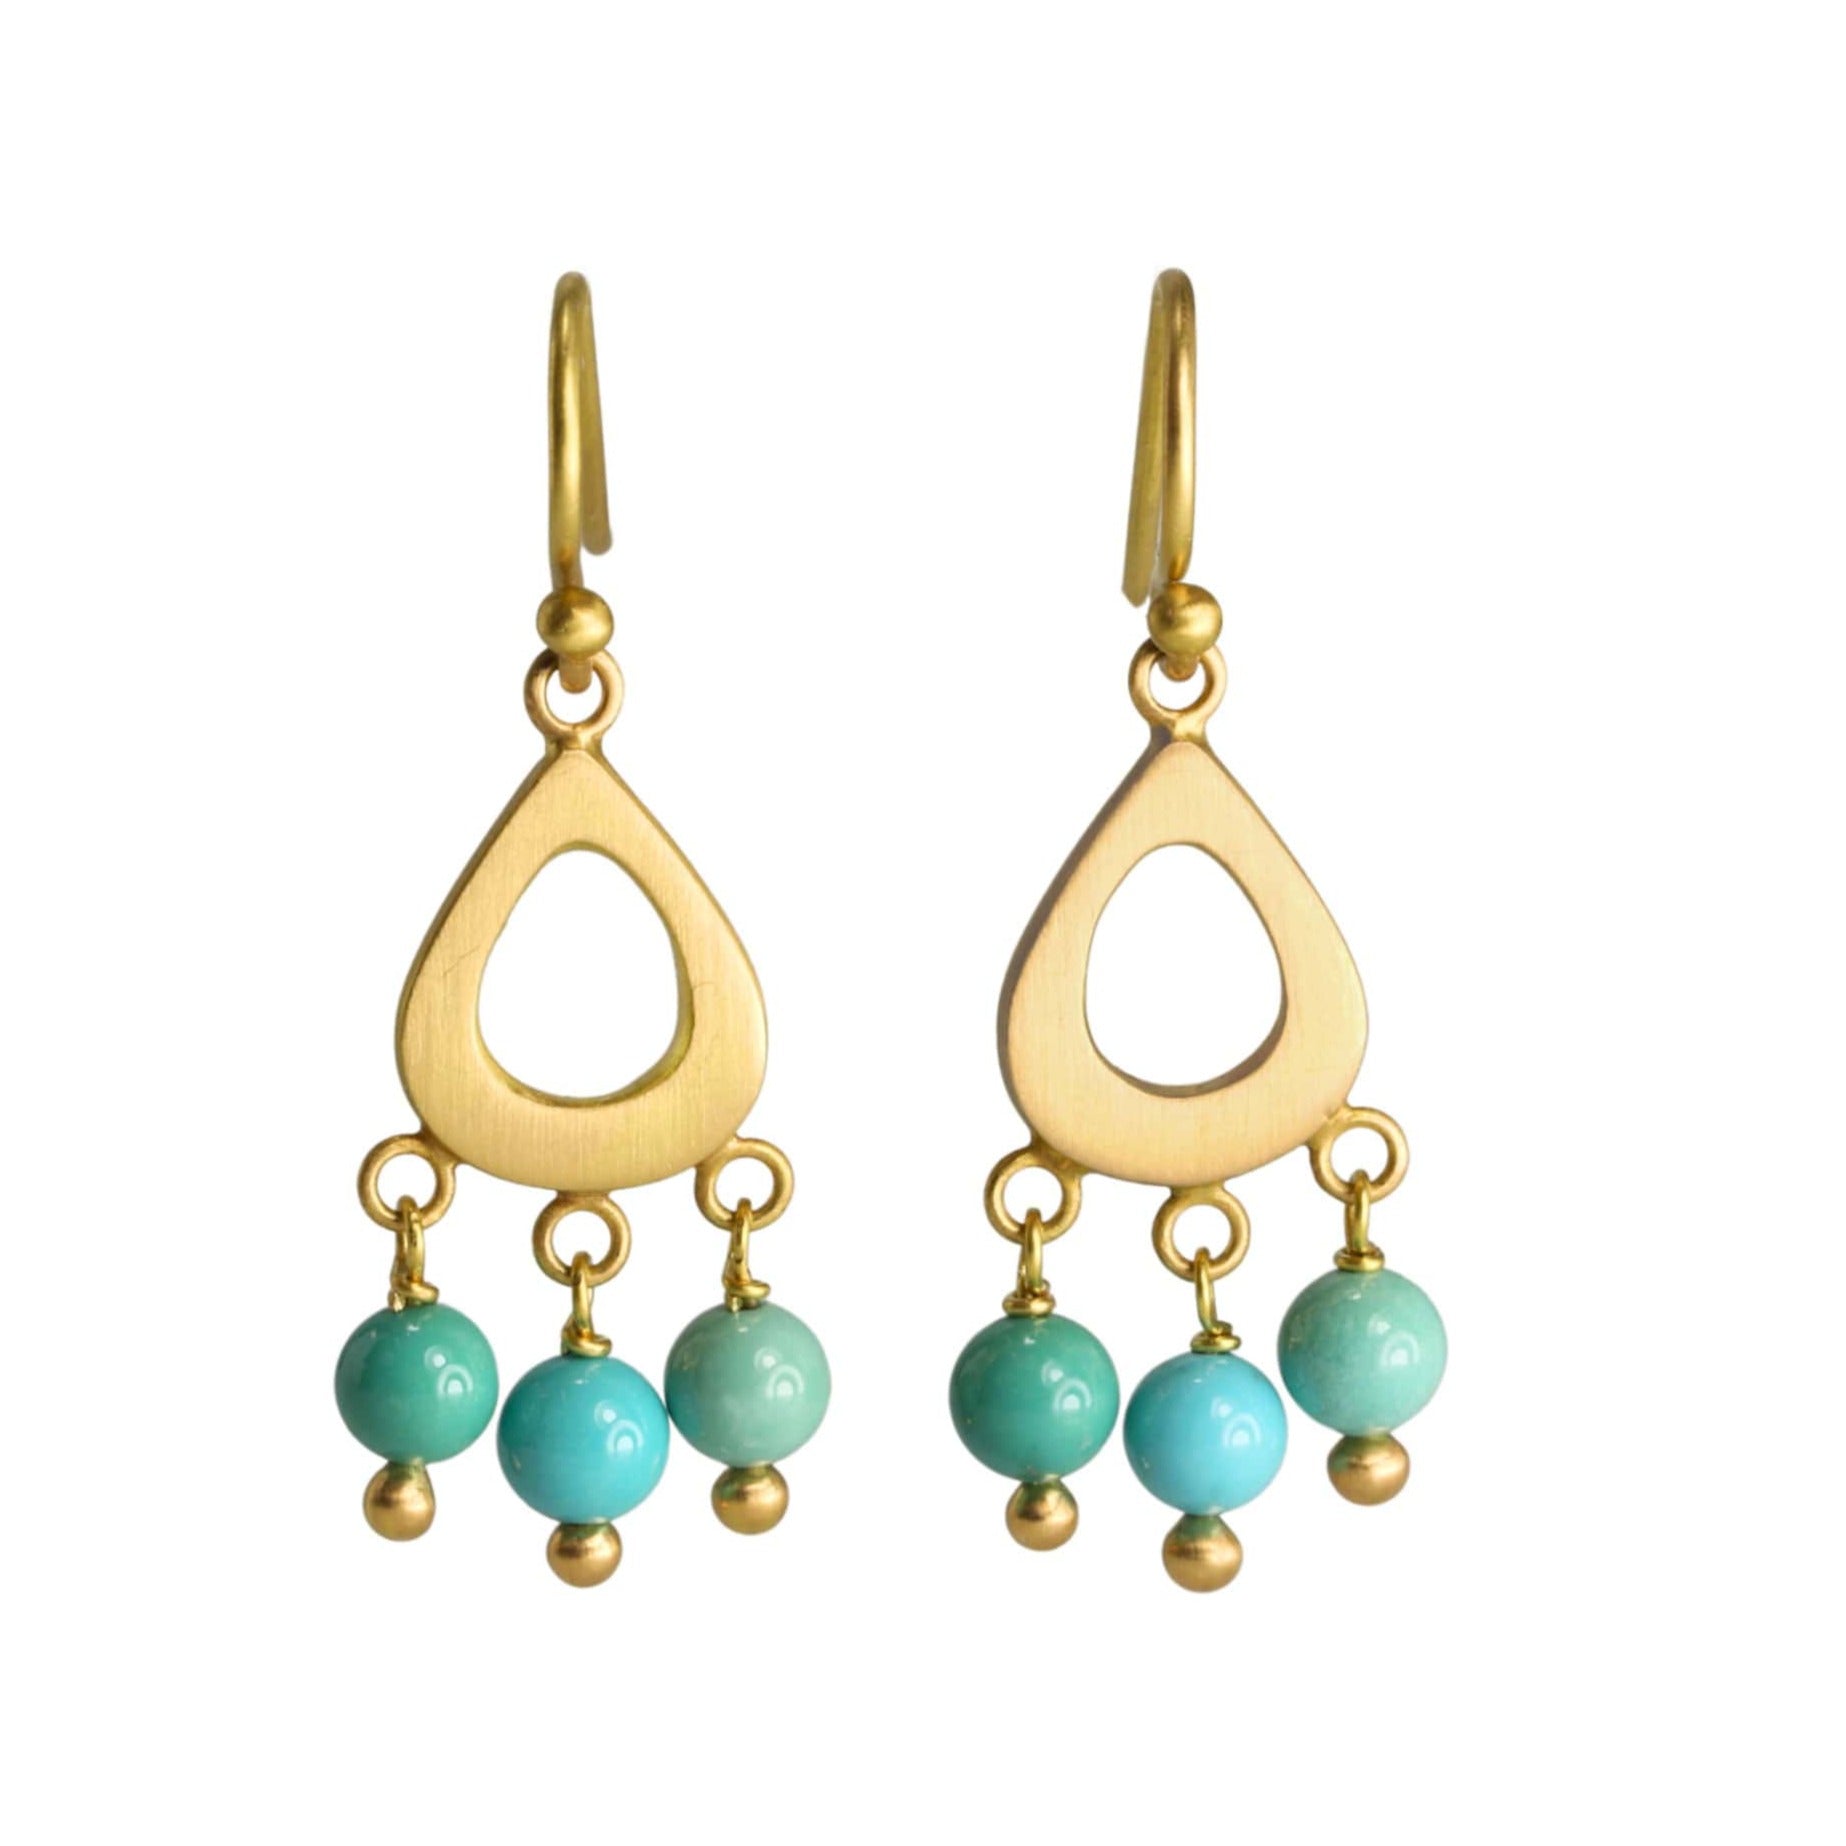 Caroline Ellen 20K Gold Small Teardrop Earrings with Dangling Turquoise